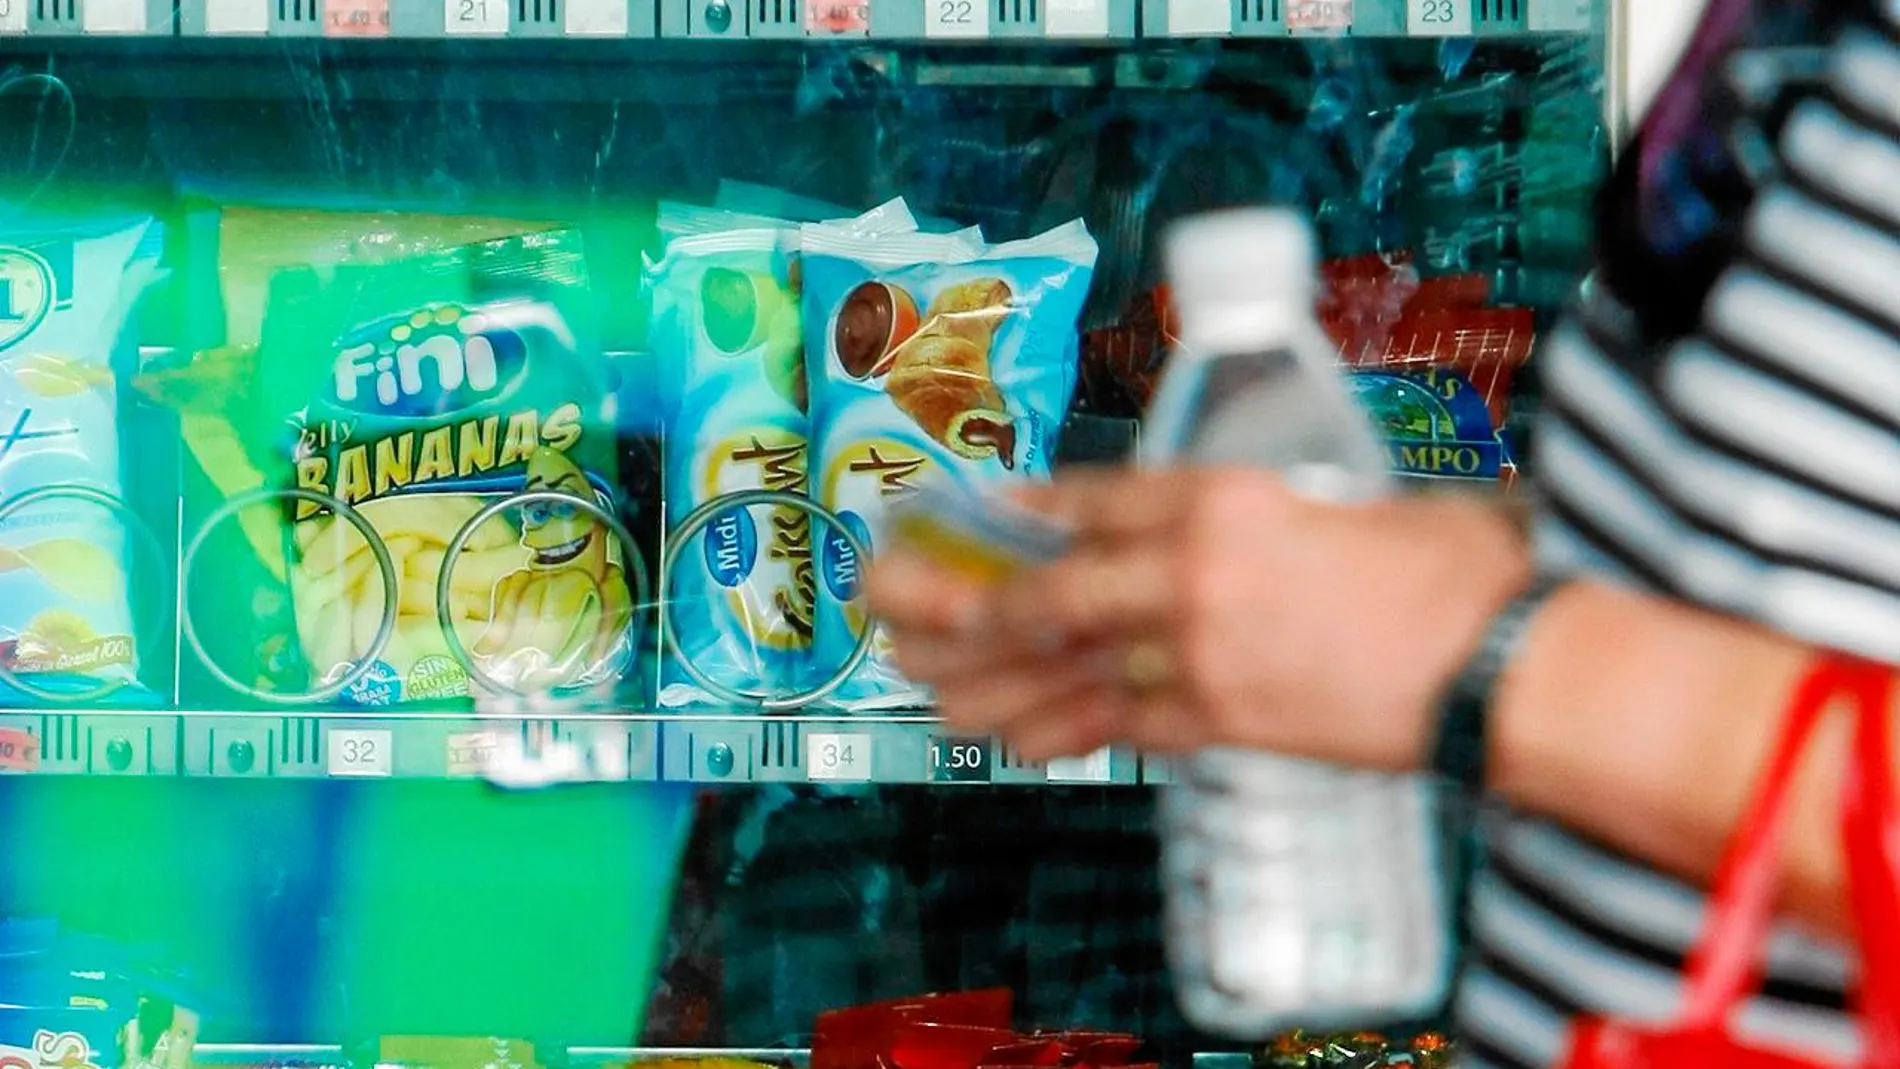 Las máquinas expendedoras, cuya oferta es poco saludable, influyen en la dieta de las personas / Foto: Luis Díaz